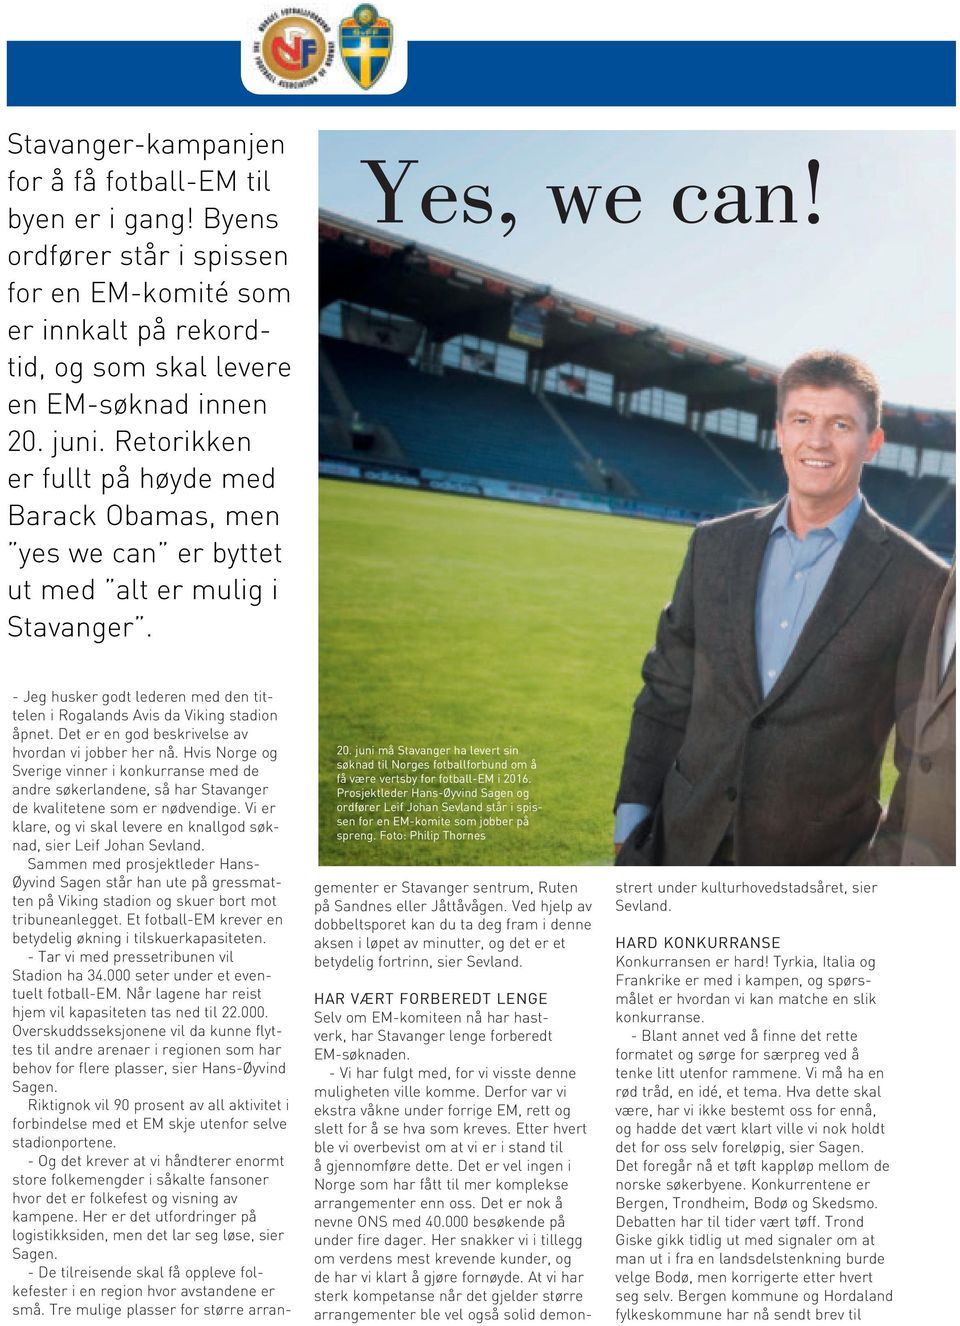 juni må Stavanger ha levert sin søknad til Norges fotballforbund om å få være vertsby for fotball-em i 2016.